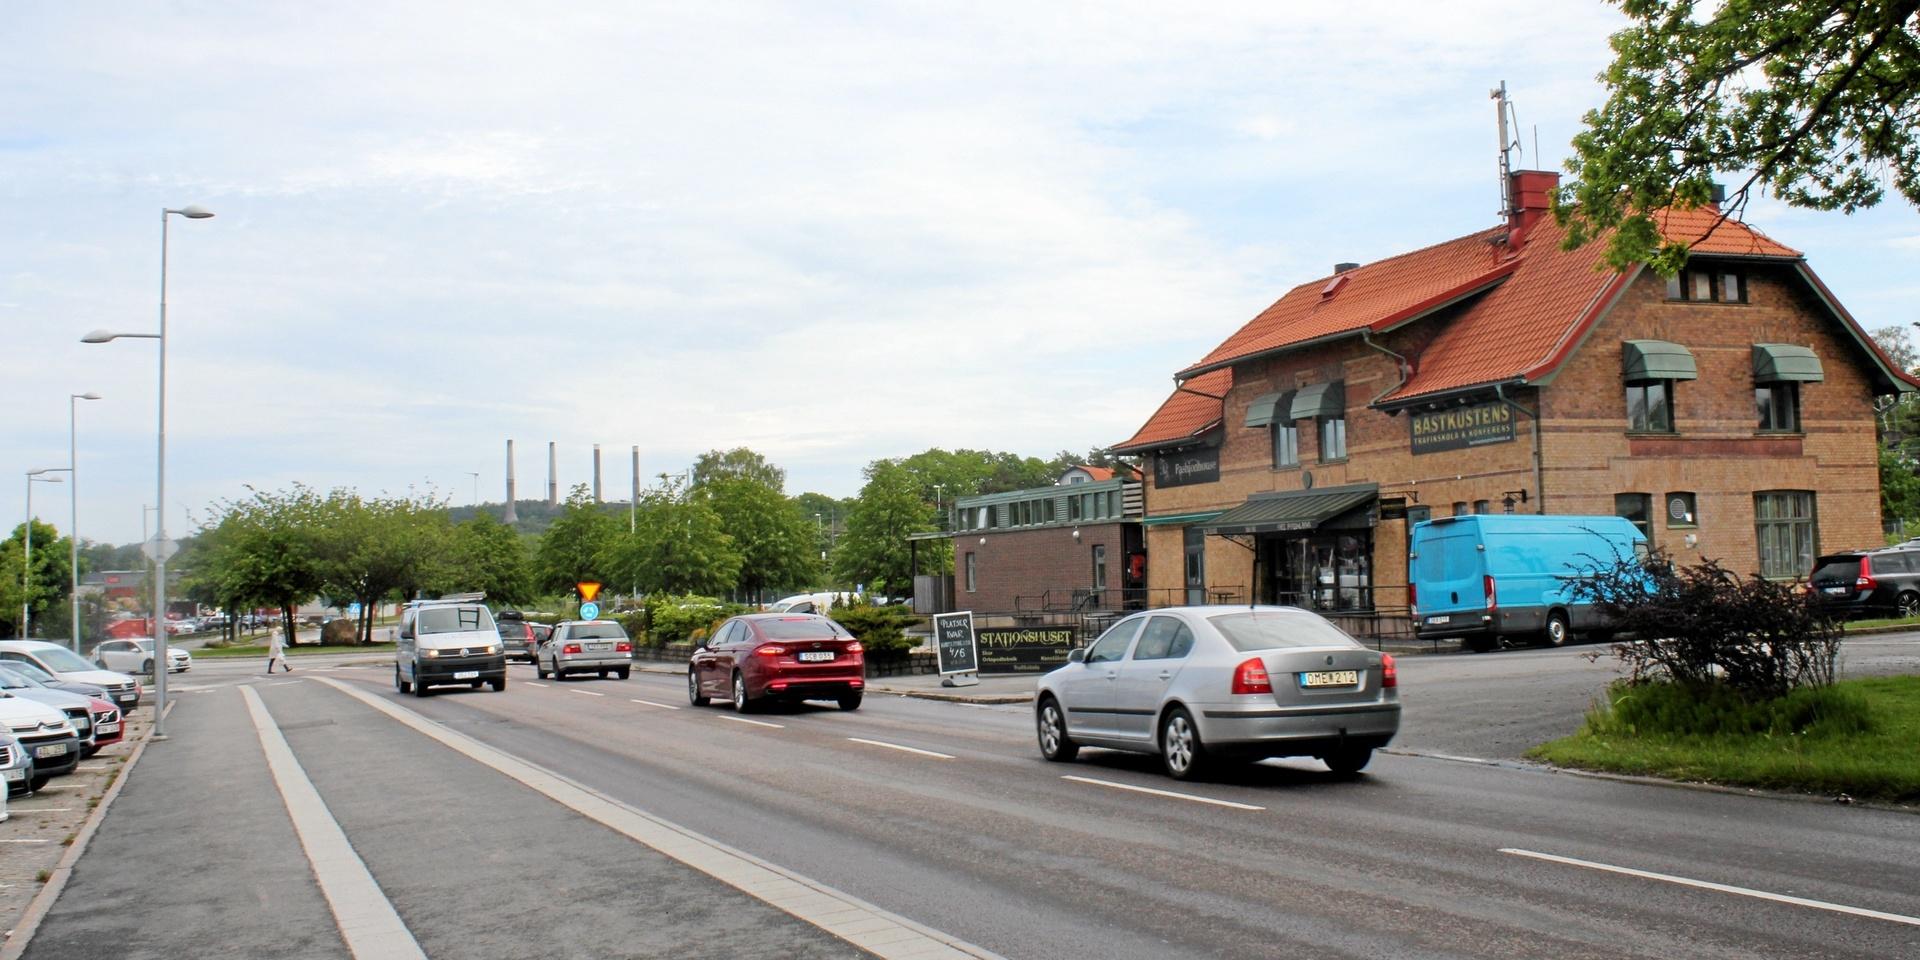 Insändaren anser att Stenungsunds kommun är på väg att förstöra både Göteborgsvägen, torgets parkering och den befintliga järnvägsstationen.